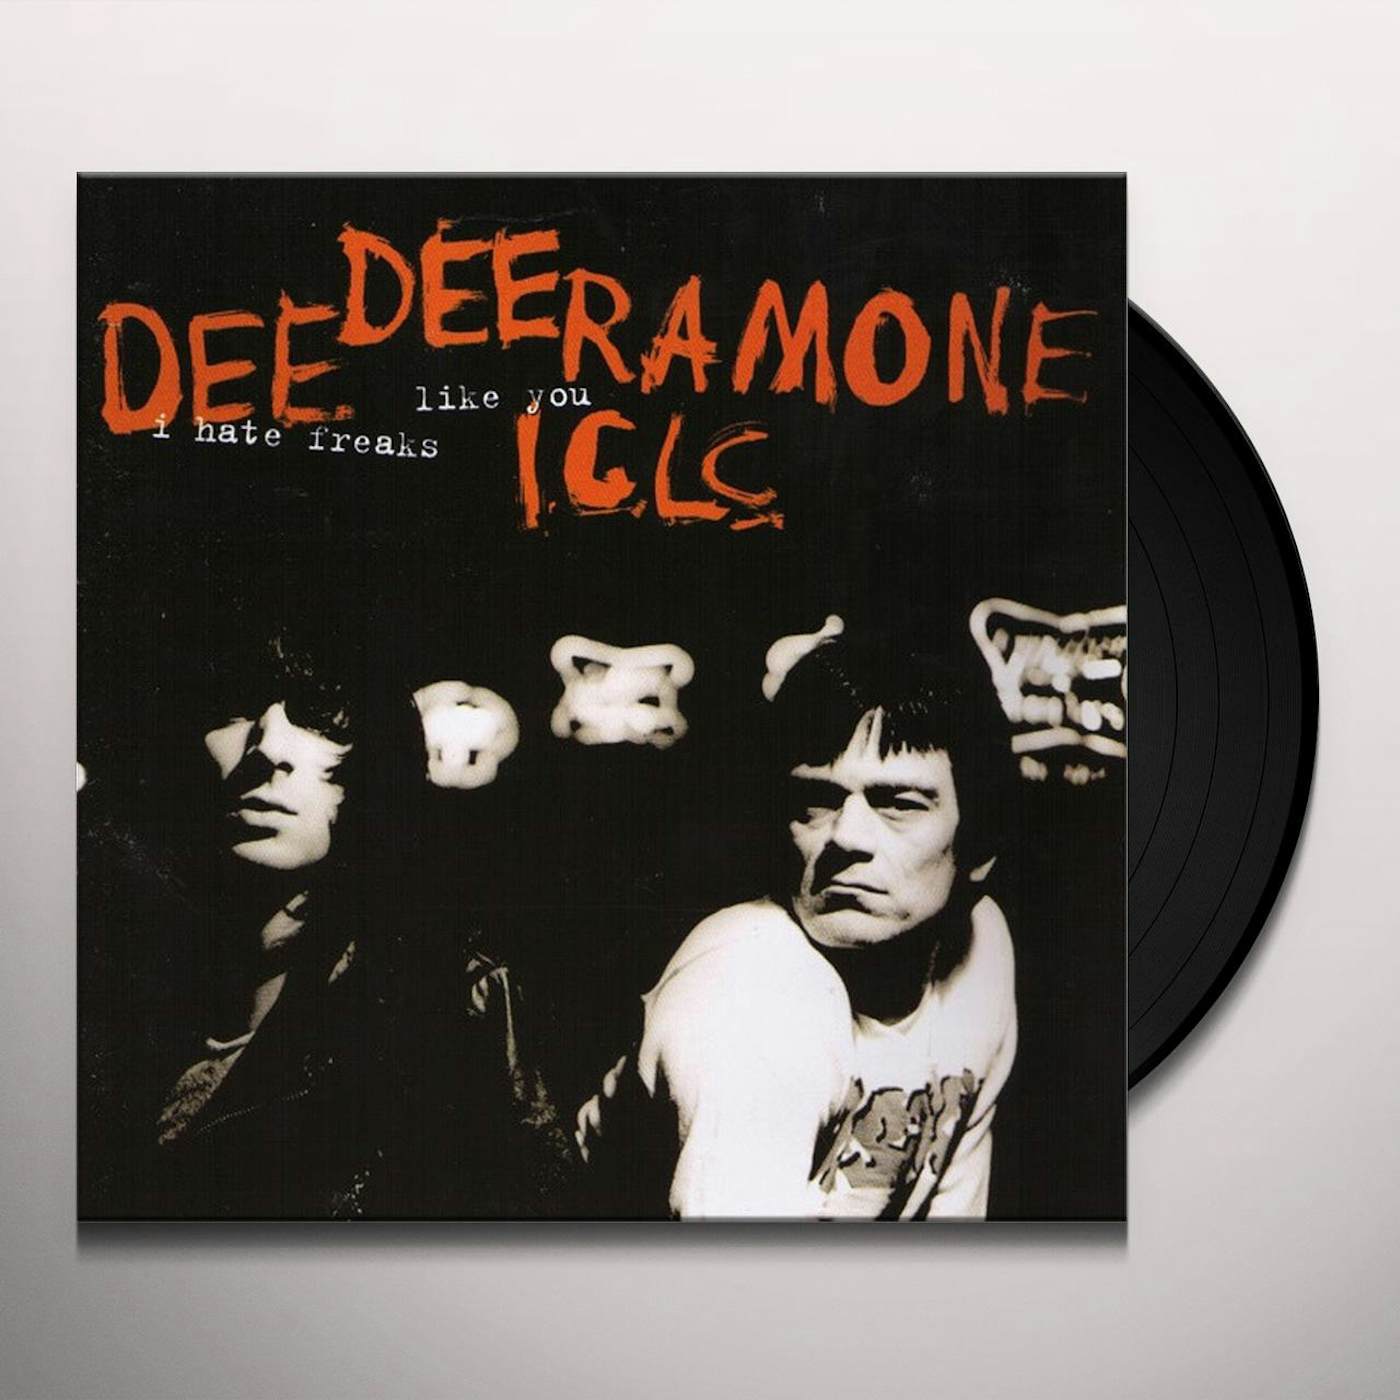 Dee Dee Ramone I Hate Freaks Like You Vinyl Record